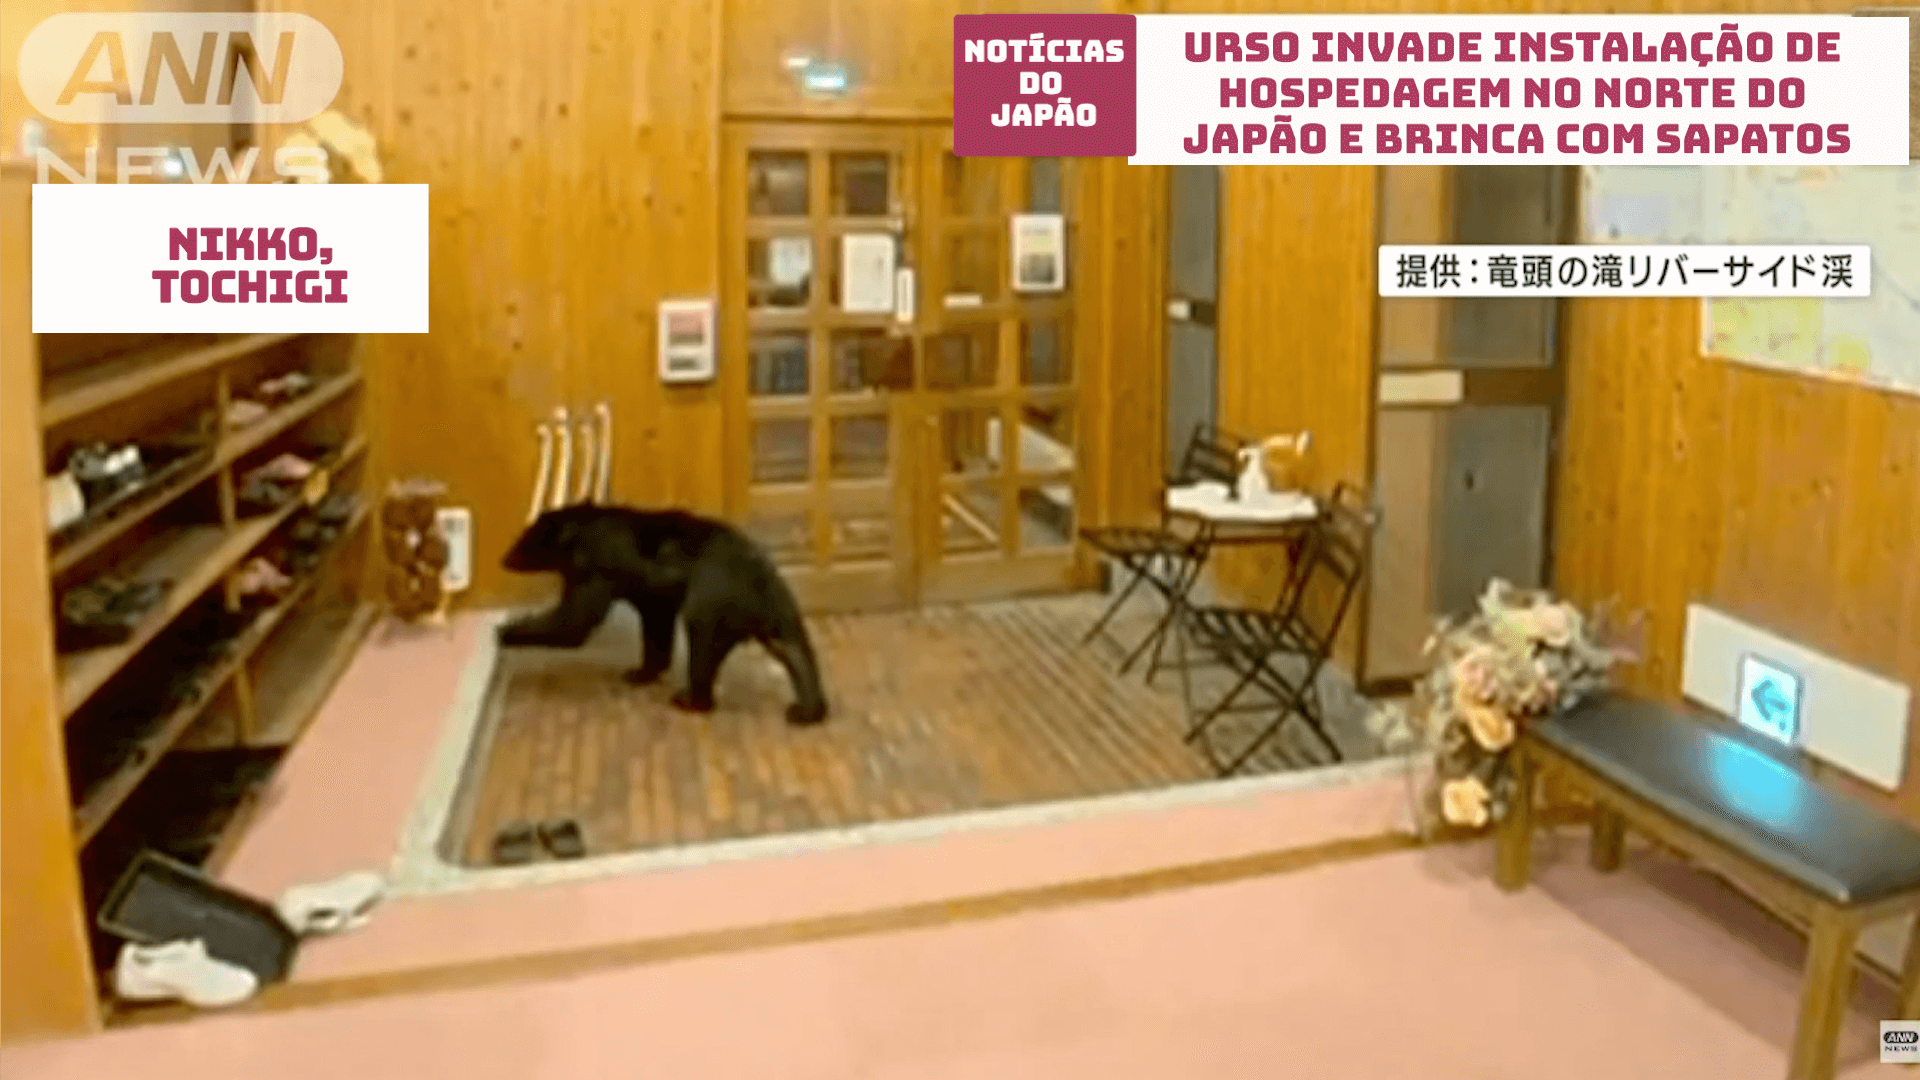 Urso invade instalação de hospedagem no norte do Japão e brinca com sapatos 